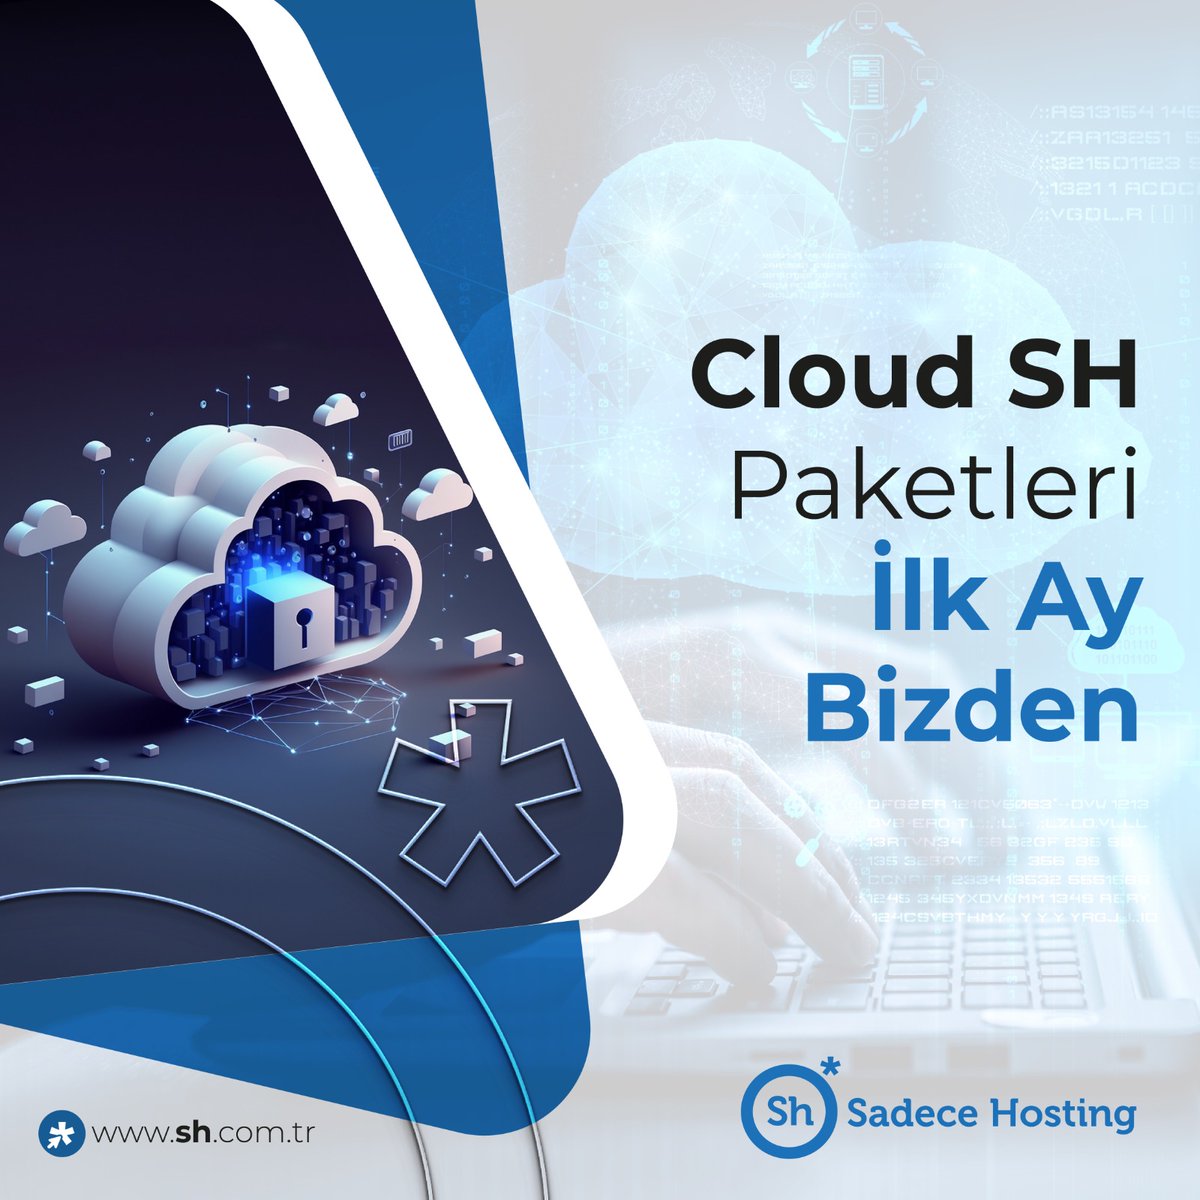 ☁ Cloud Sh Paket alımlarında ilk ay bizden.
🎯 Bulut Sunucu avantajlarına hemen sahip olun.

🌐sh.com.tr/cloud-server
☎ 0850 300 0 300

#cloudserver #bulutsunucu #webserver #cloudtechnology #datacenter #webhosting #sadecehosting